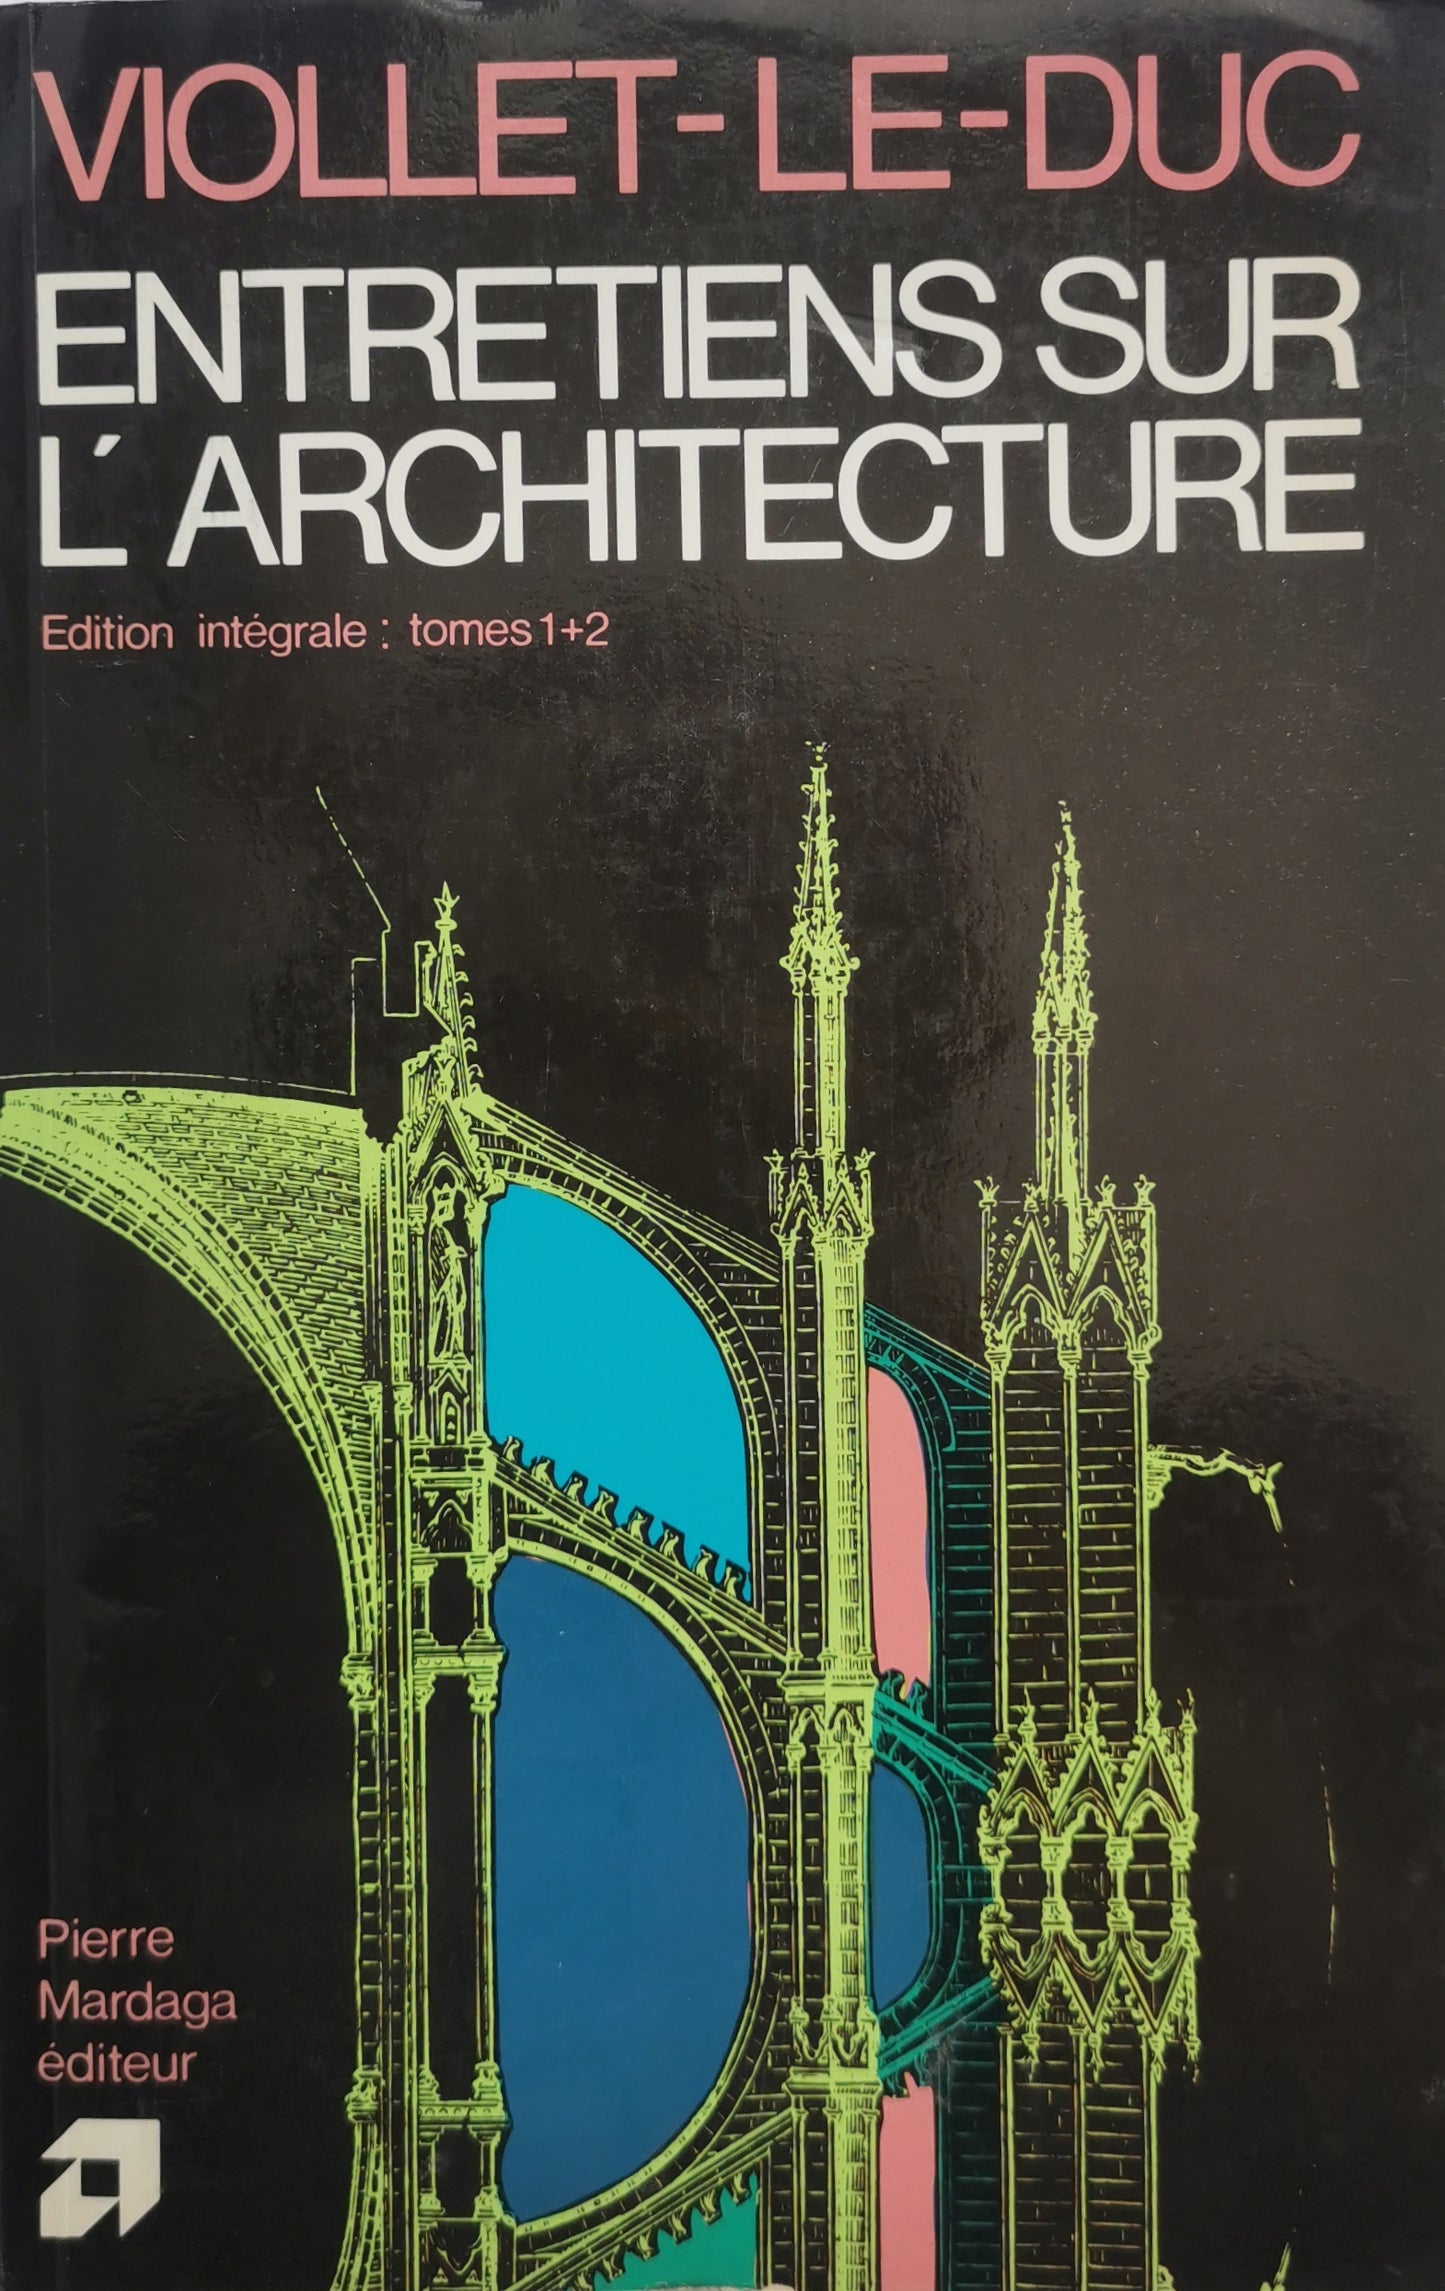 Entretiens sur l'architecture, Edition intégrale: tomes I et II, Viollet-le-Duc, illustré de 107 gravures sur bois, Pierre Mardaga, 1980.